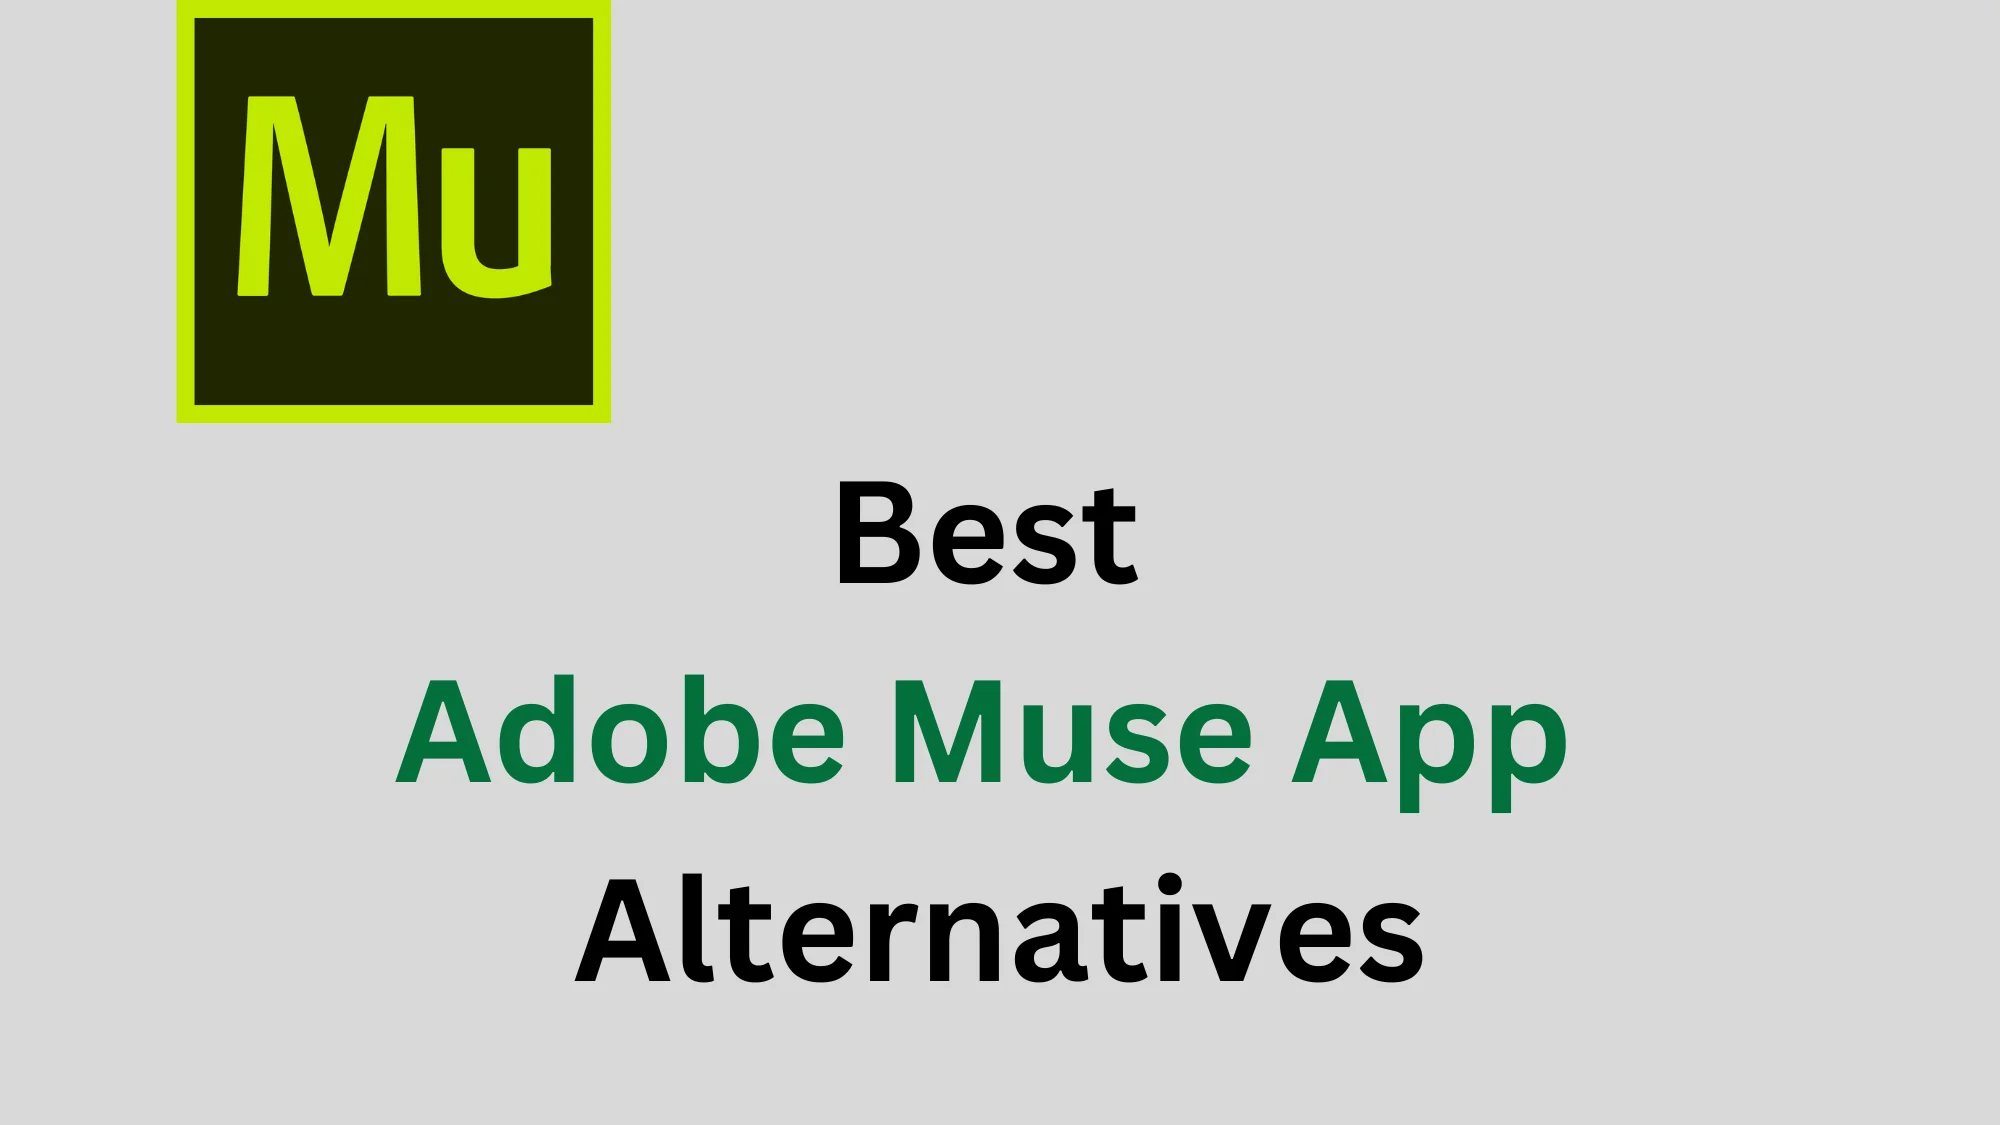 Adobe Muse Alternatives